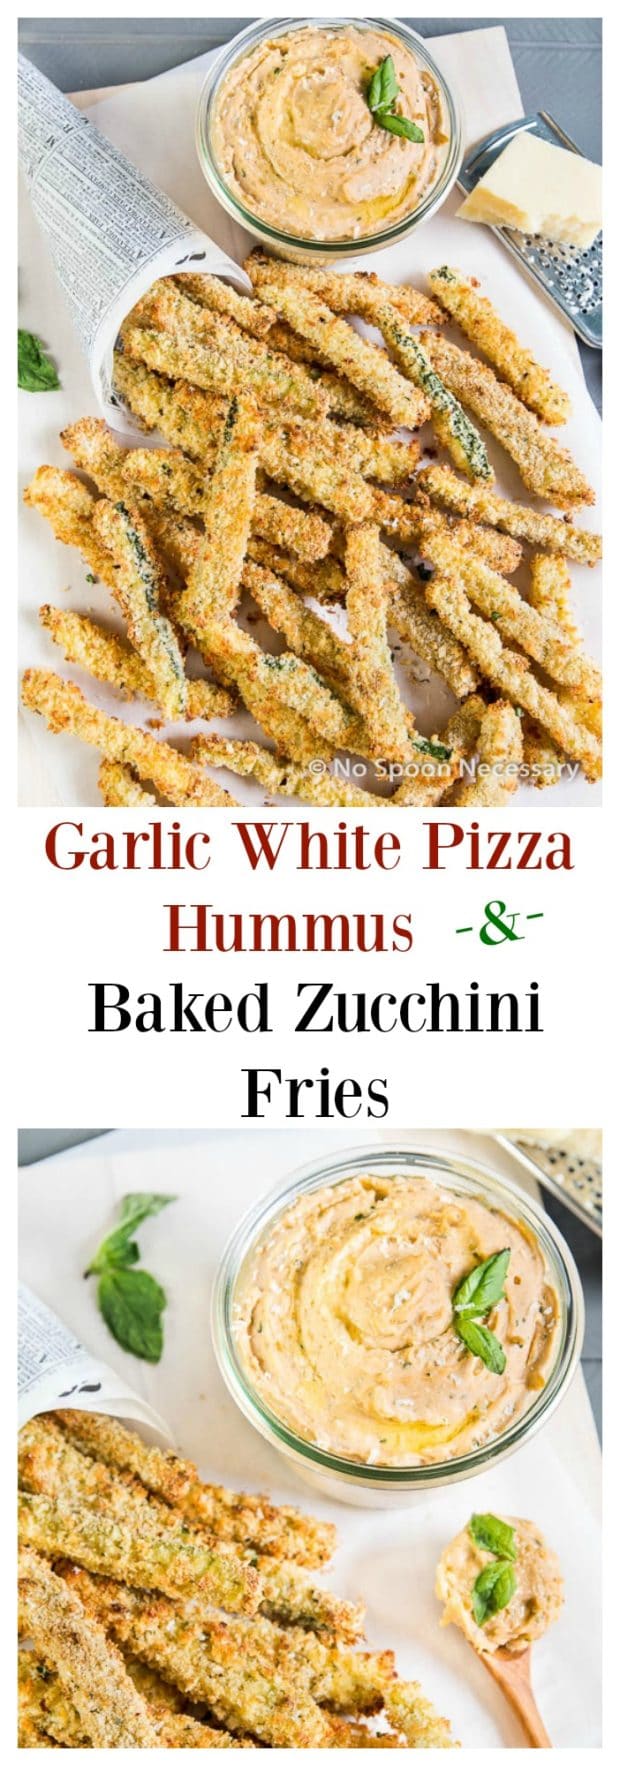 Garlic White Pizza Hummus & Baked Zucchini Fries